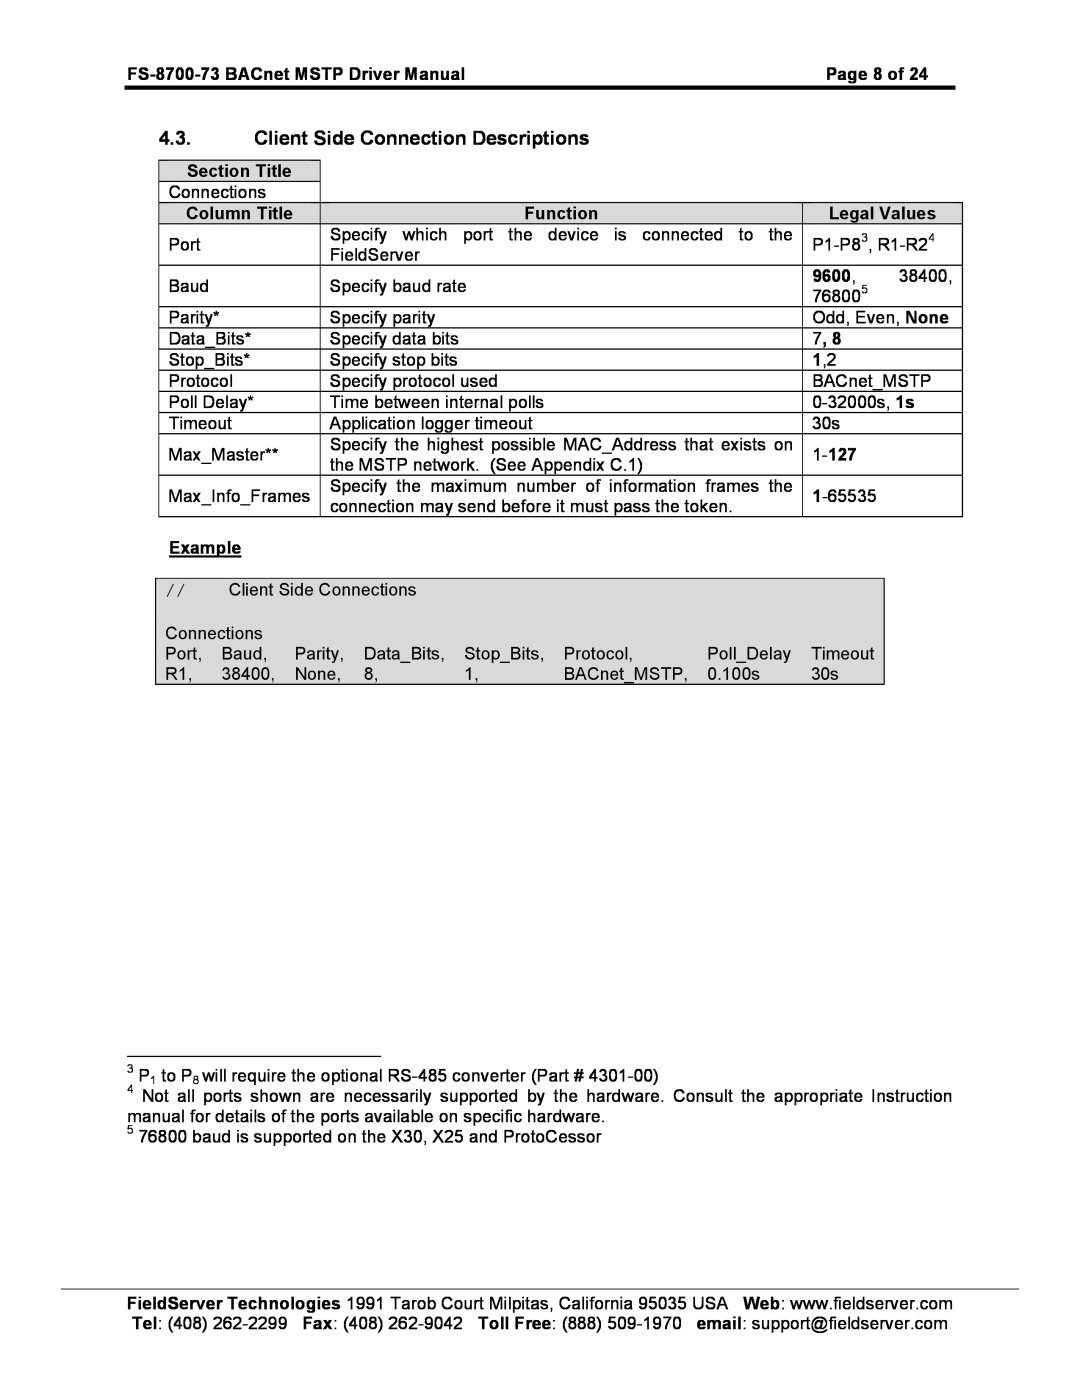 FieldServer FS-8700-73 instruction manual Client Side Connection Descriptions 